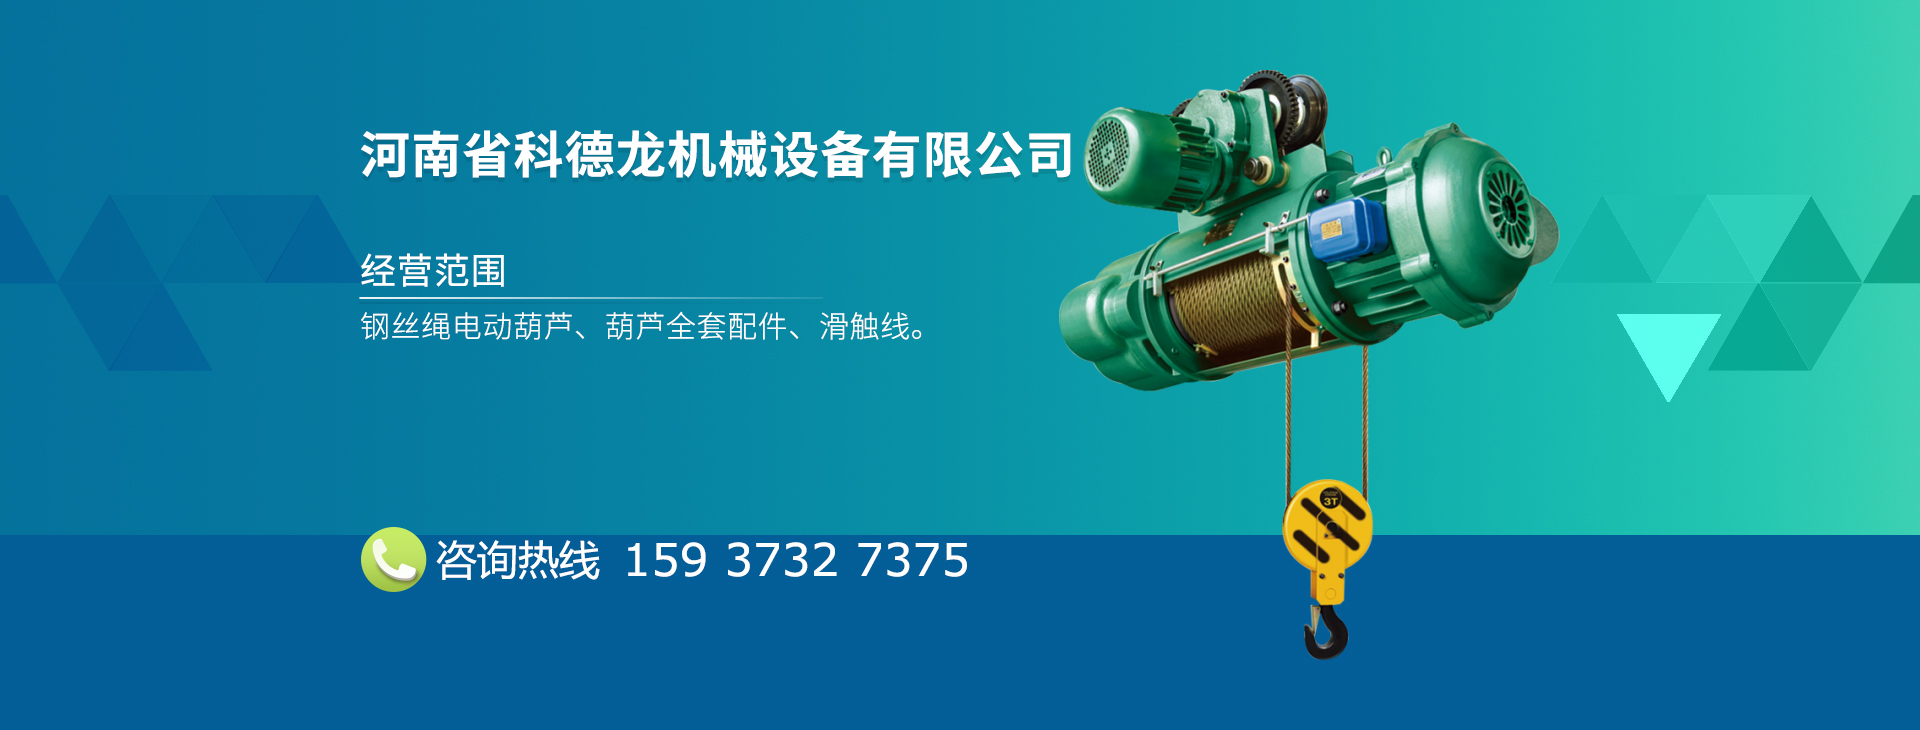 河南省科德龙机械设备有限公司